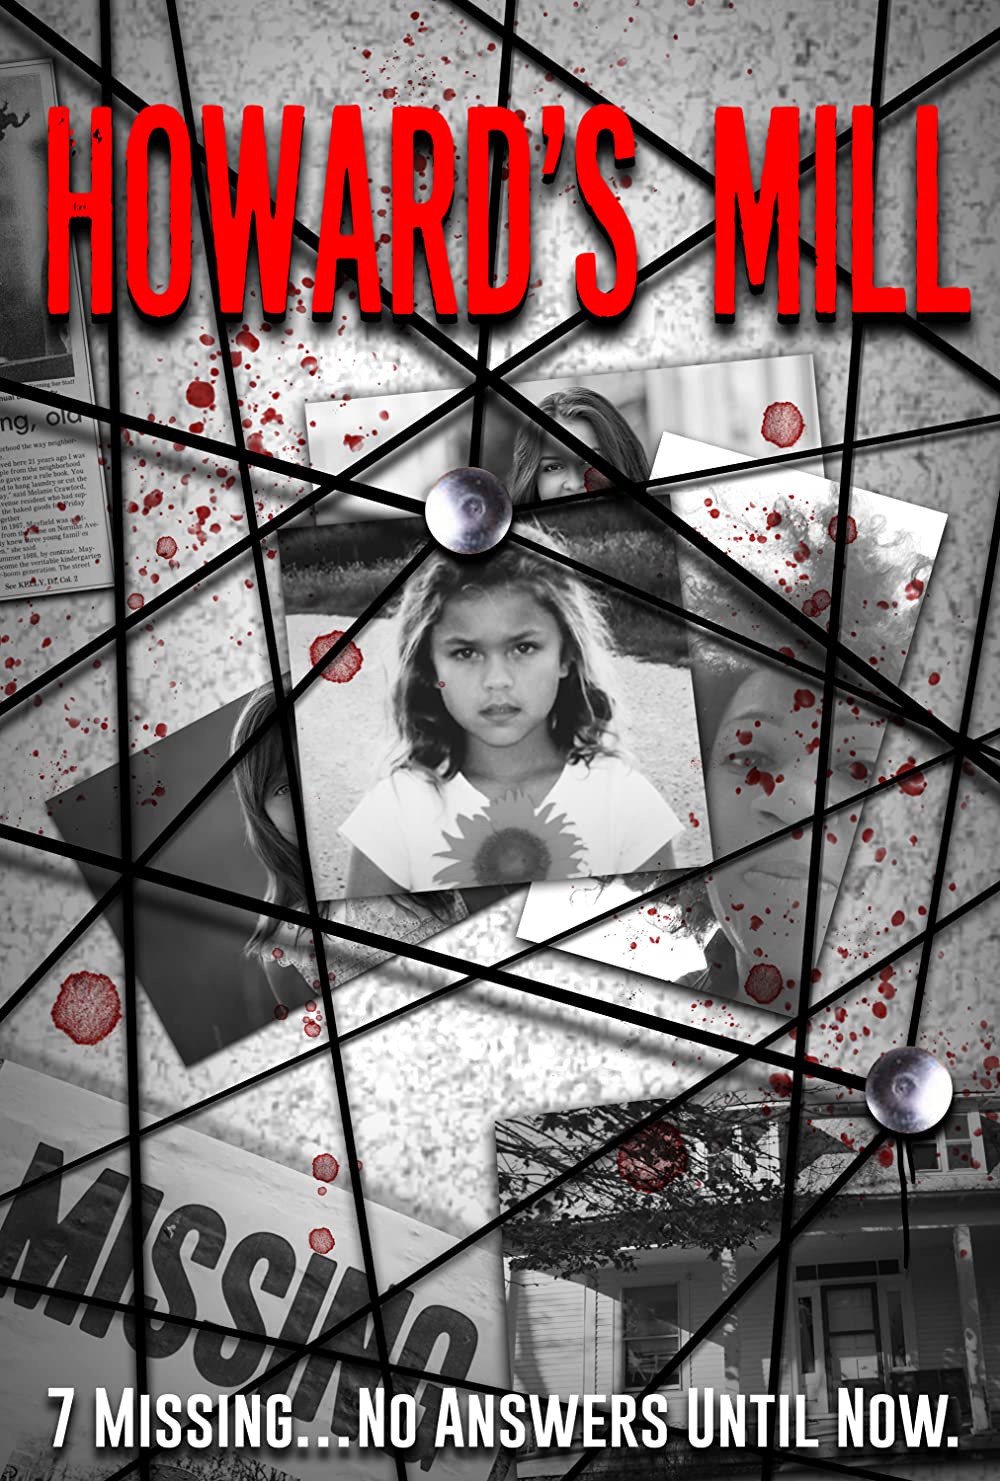 ดูหนังออนไลน์ฟรี Howard’s Mill (2021) ฮาวเวิร์ดส์ มิลล์